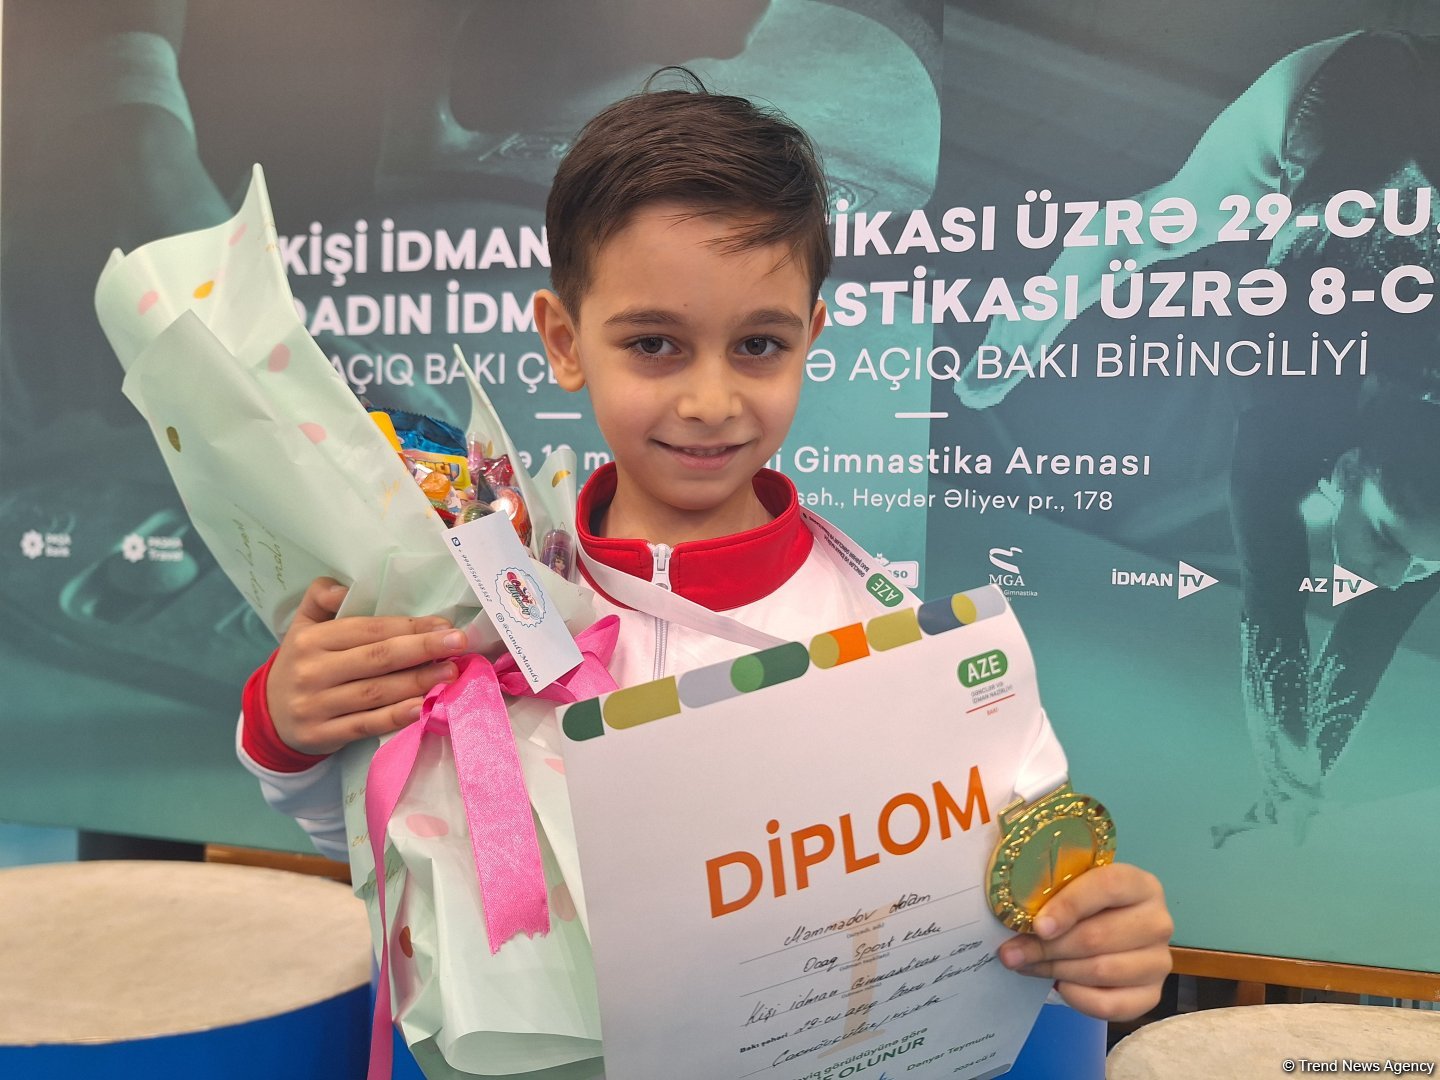 Самым запоминающимся моментом соревнований стало вручение наград – юный азербайджанский гимнаст